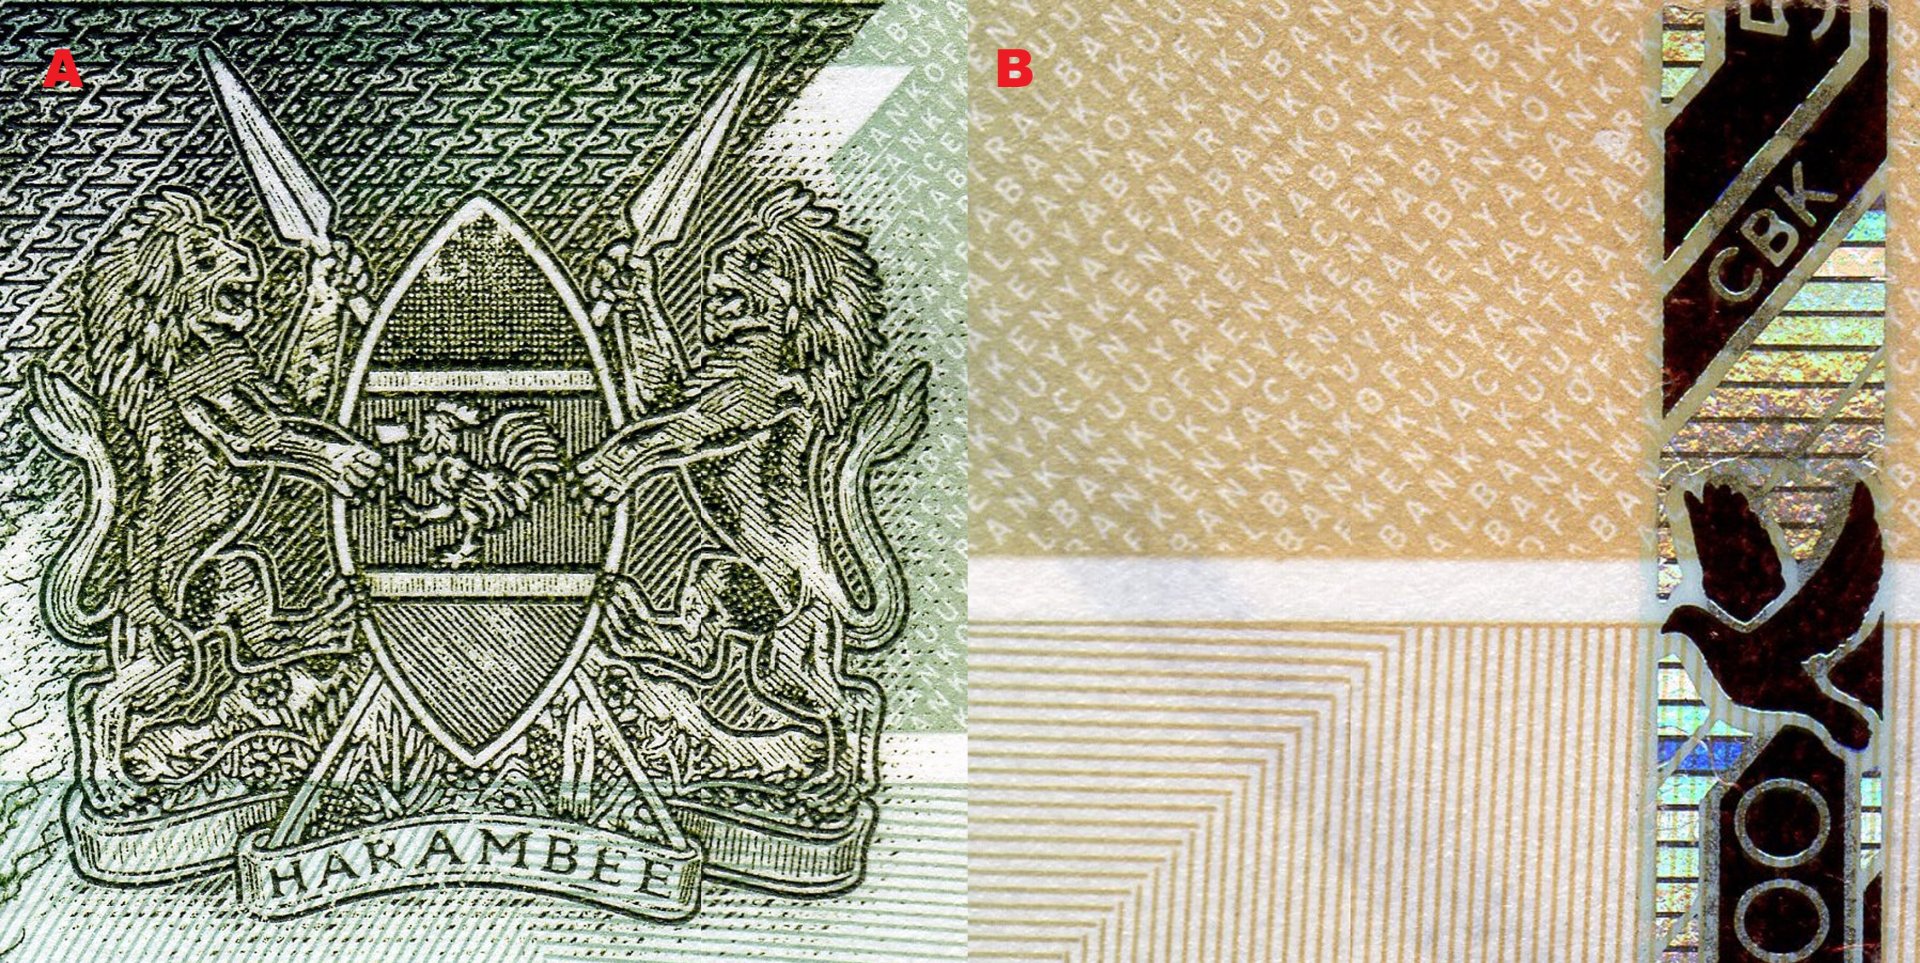 1. A) Státní znak Keni, skutečné barvy erbu jsou označeny šrafováním podle heraldických pravidel. B) Negativní mikropísmo (CENTRALBABKOFKENYA a BANKIKUUYAKENYA) a detail bezpečnostního proužku.